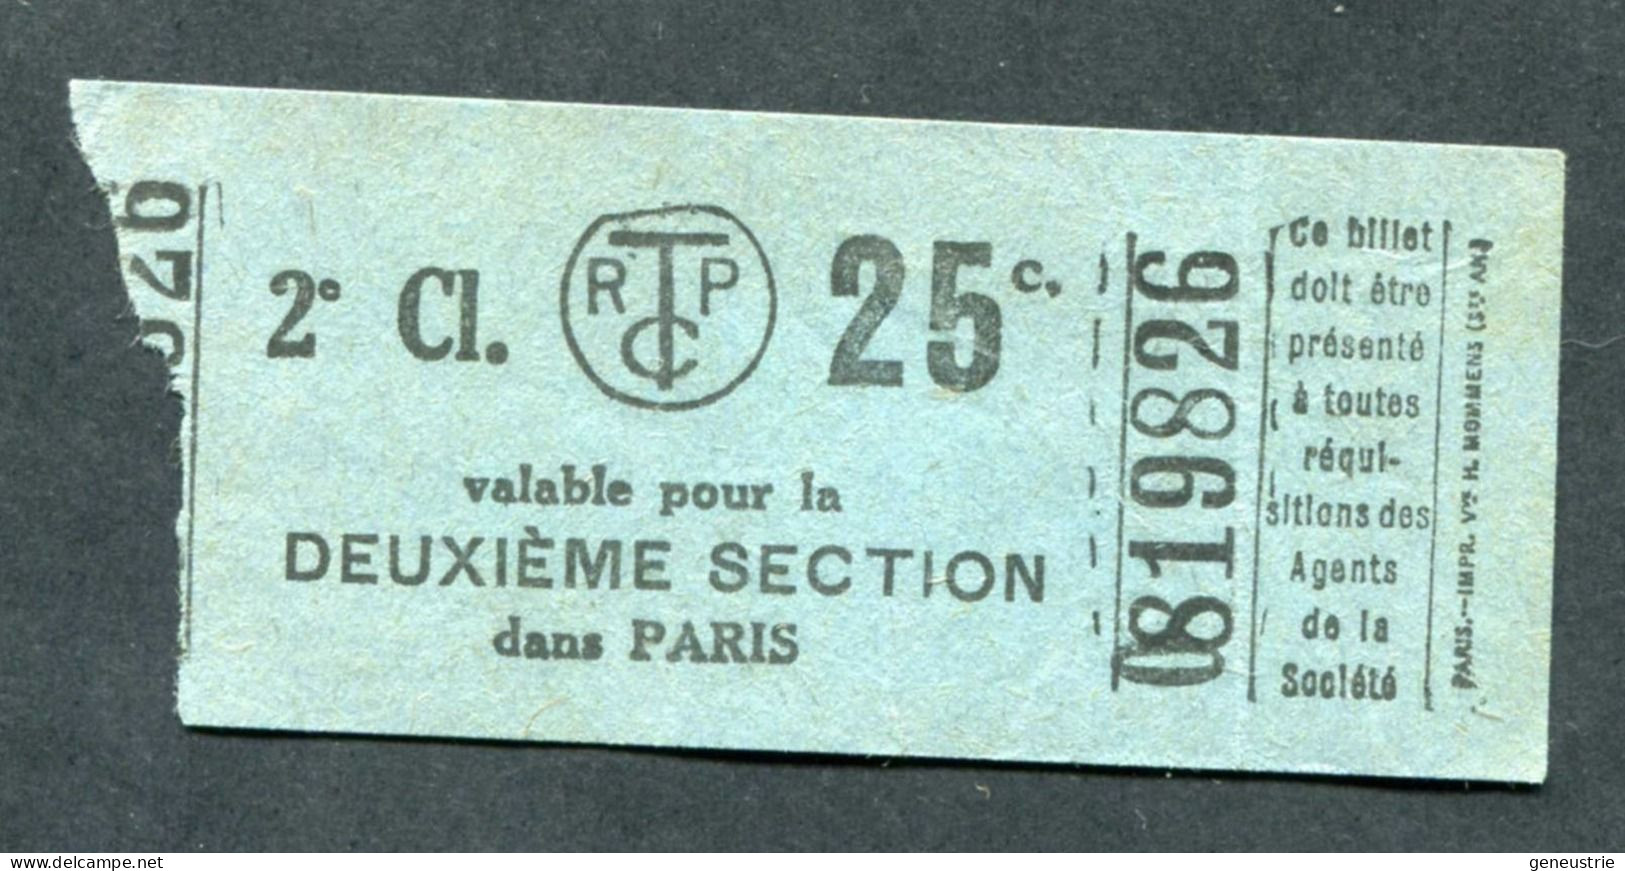 Ticket De Tramways Parisiens 1922-1924 (STCRP) 2e Classe 25c - Paris" Chemin De Fer - Tramway - Tram - Europa